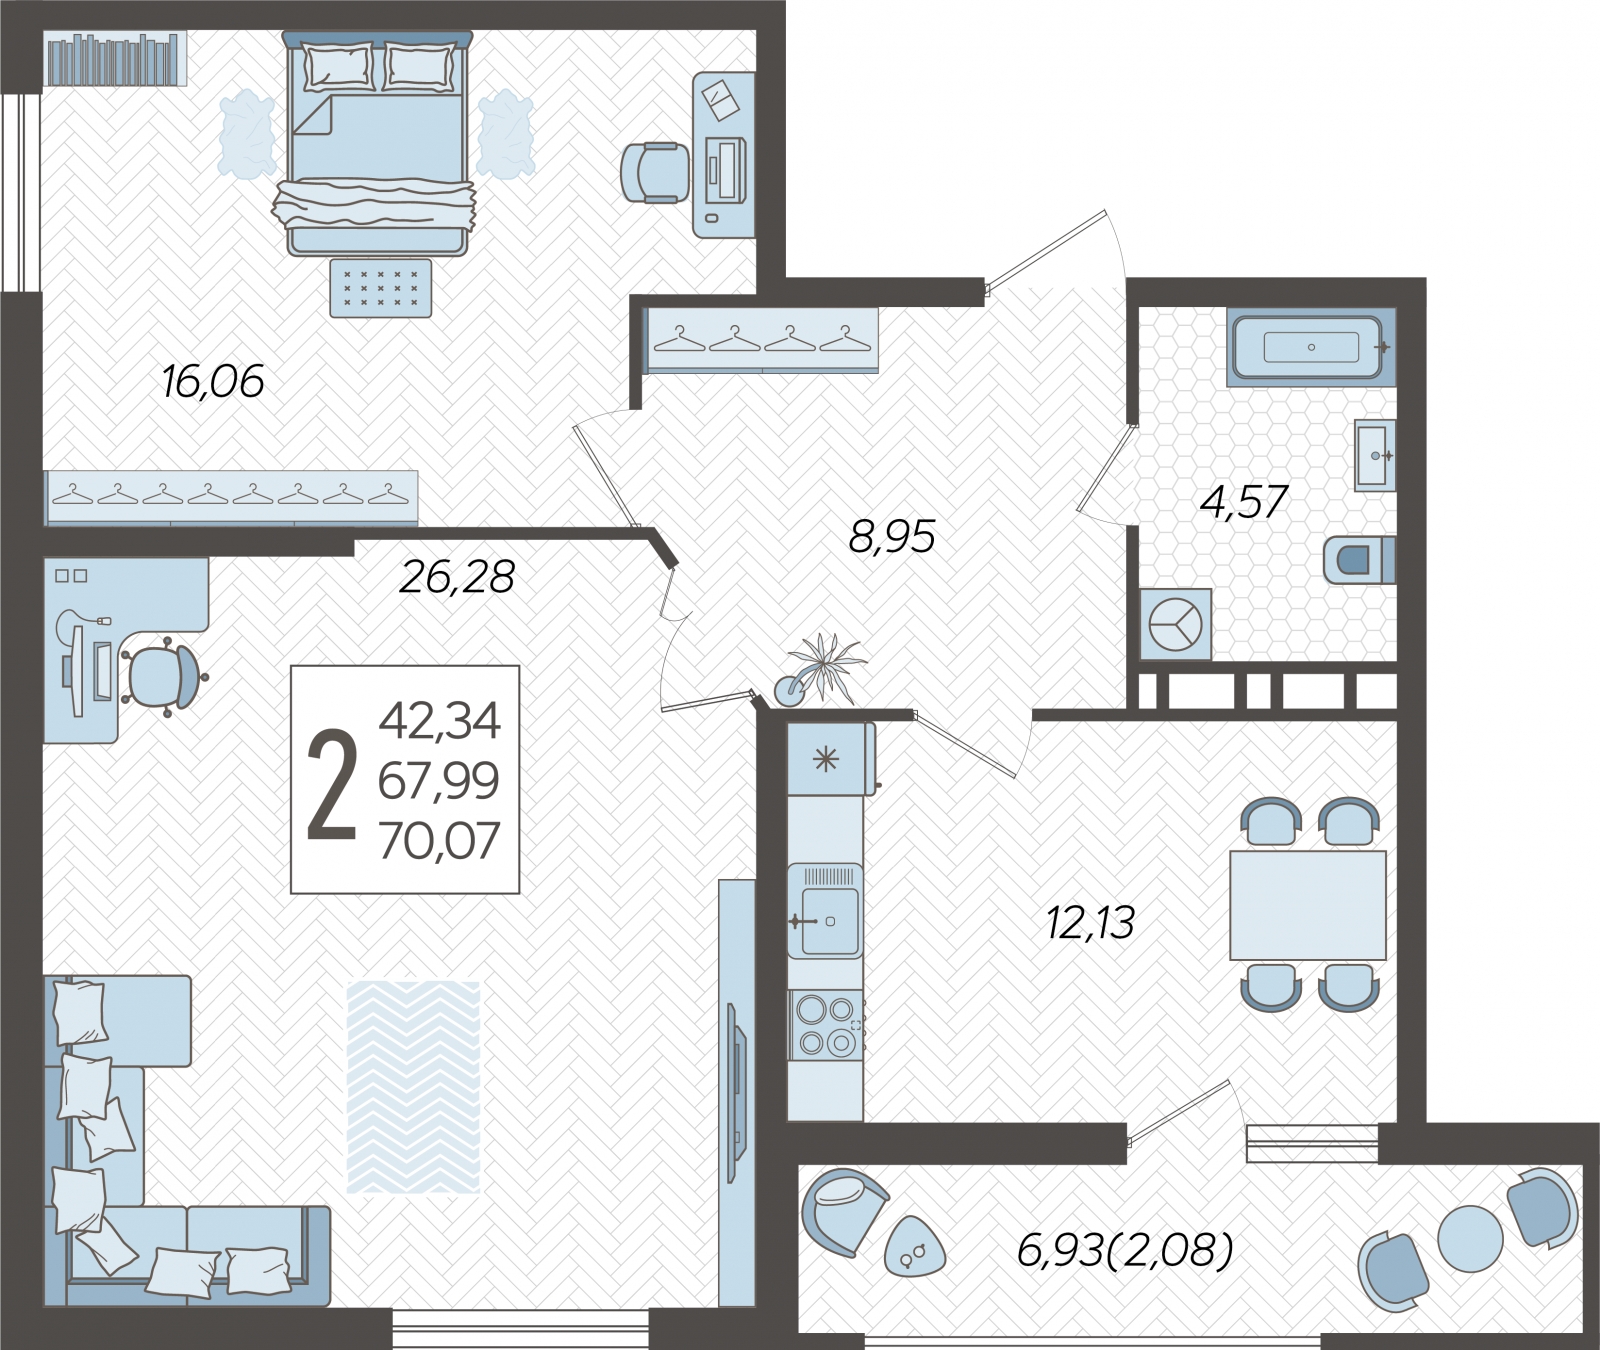 2-комнатная квартира в ЖК мой адрес На Вертолетчиков на 2 этаже в 1 секции. Дом сдан.